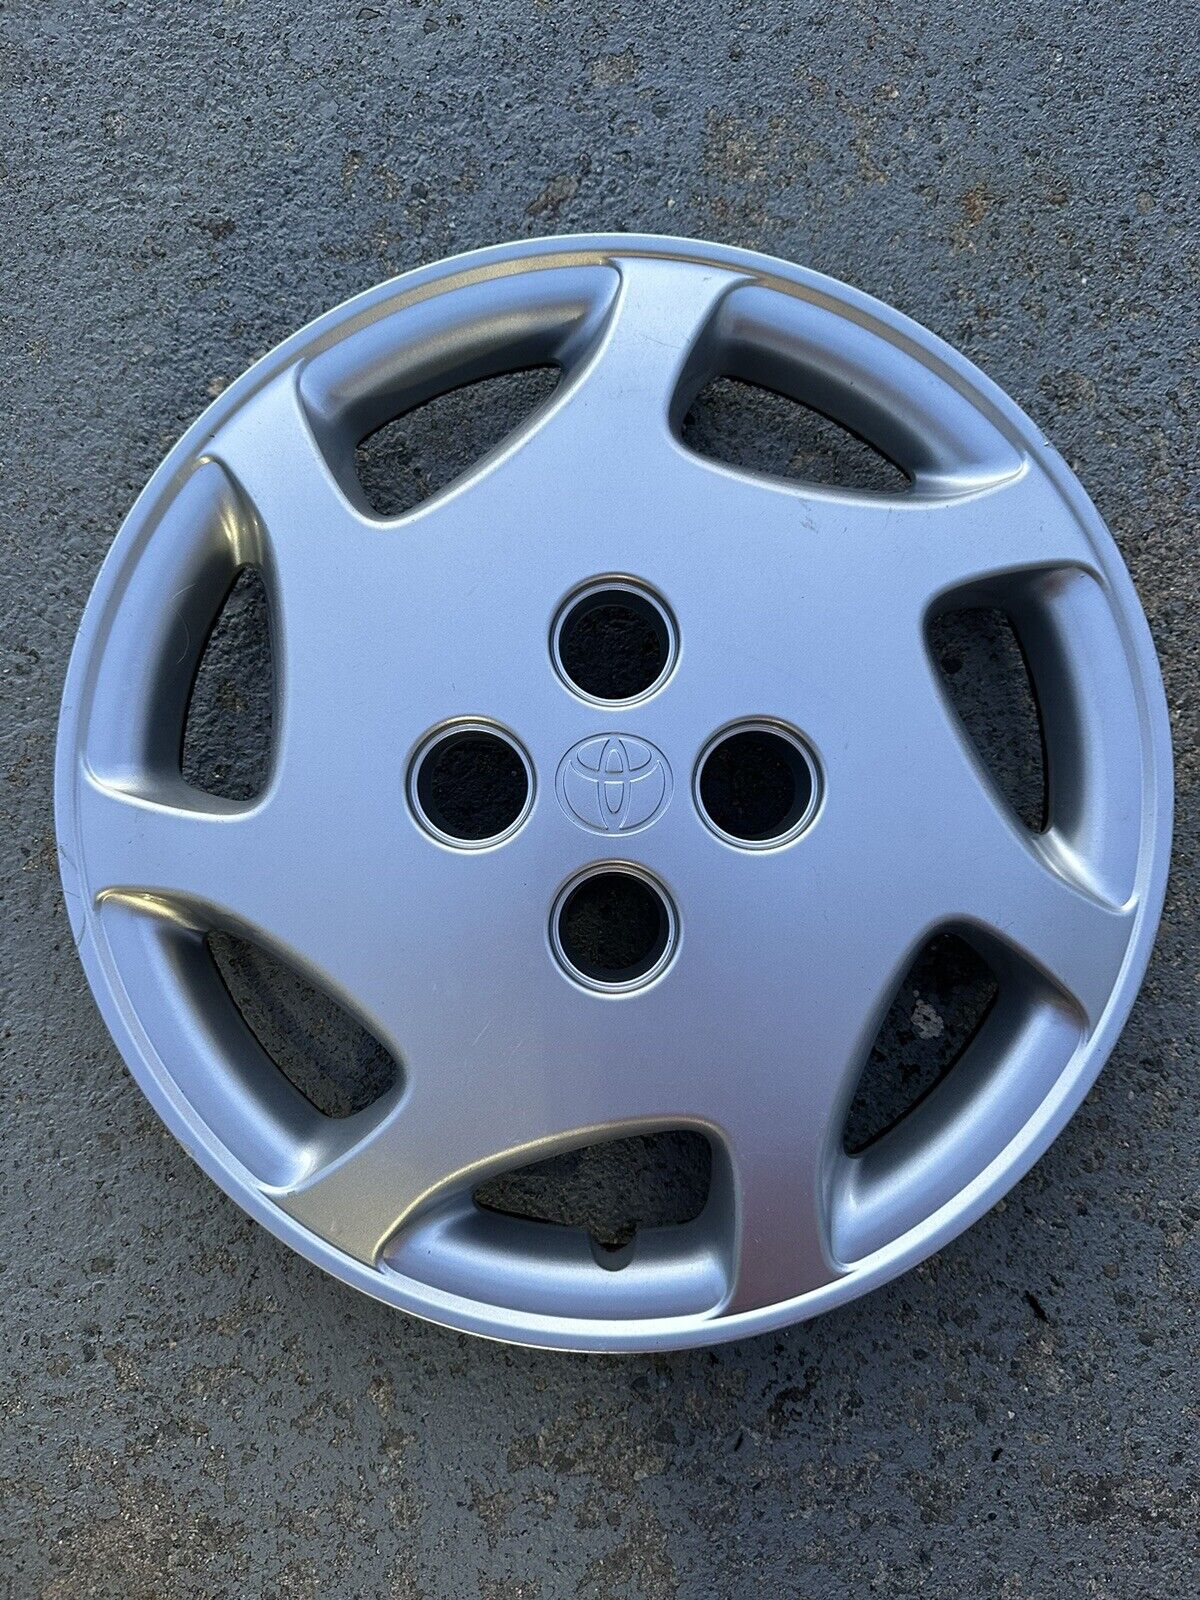 98-00 Toyota Corolla LE 14” Hubcap Wheel Cover 42621-AB020 98 99 00 Rare 4 Hole